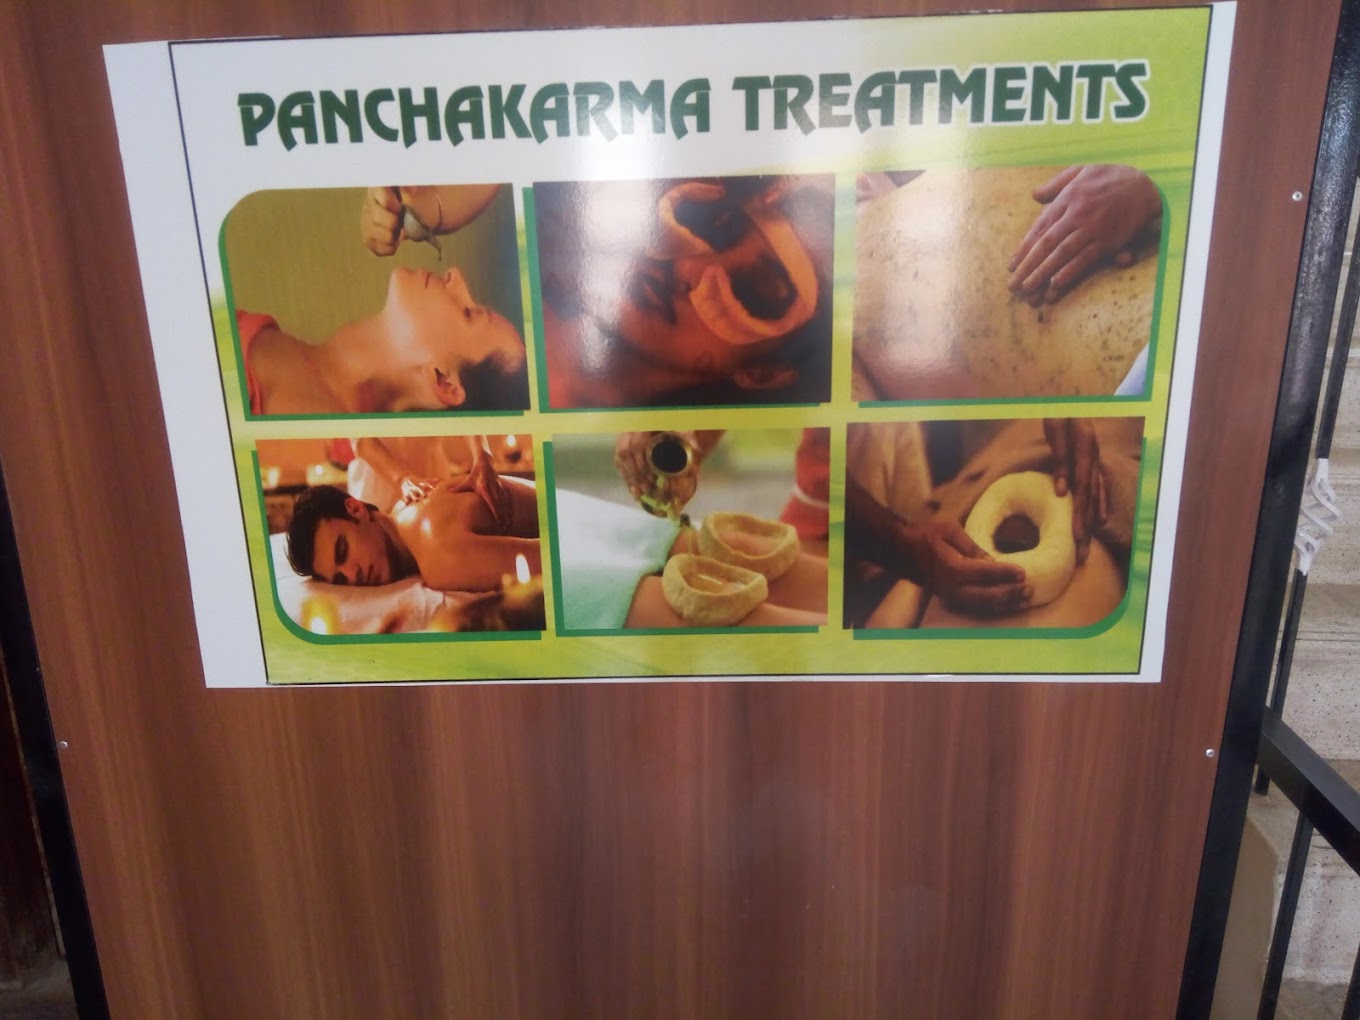 Swasthya Ayurveda Clinic And Panchakarma Center – Saraswathipuram